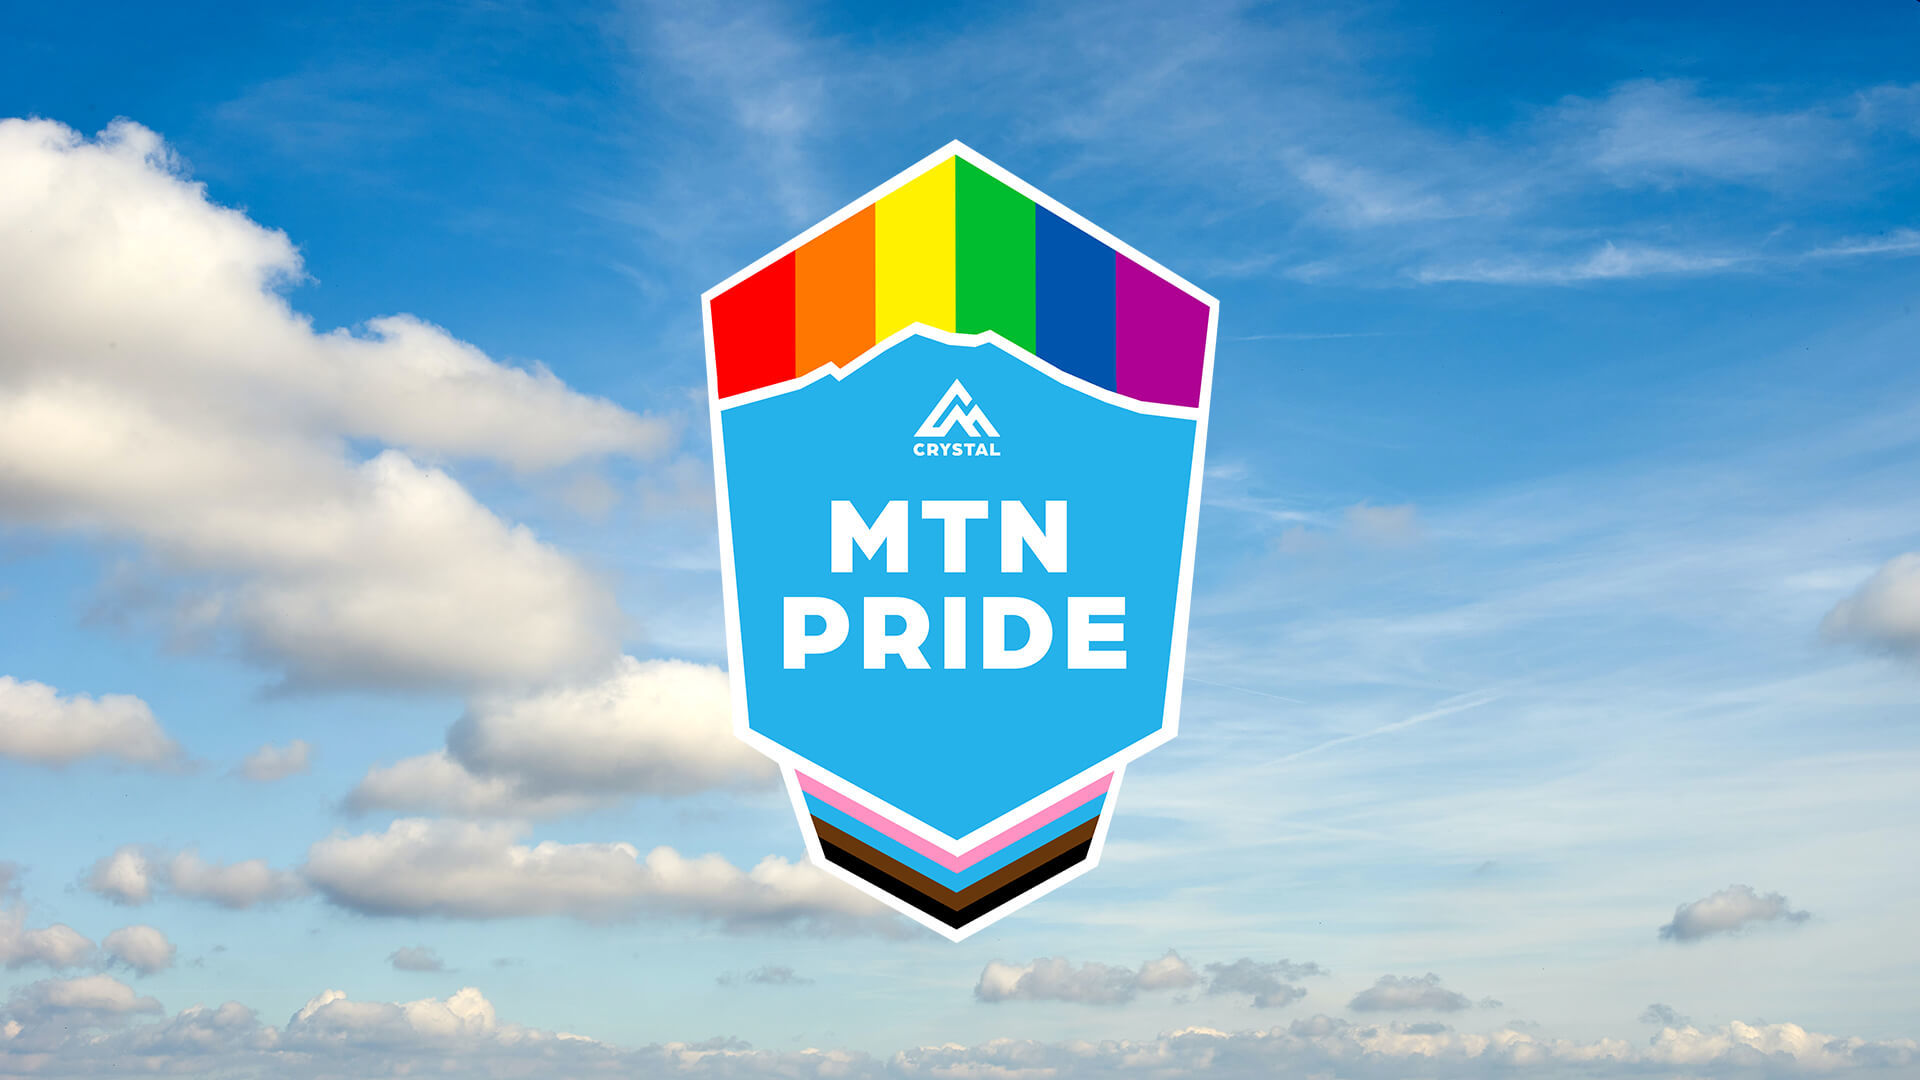 Mountain pride 2021